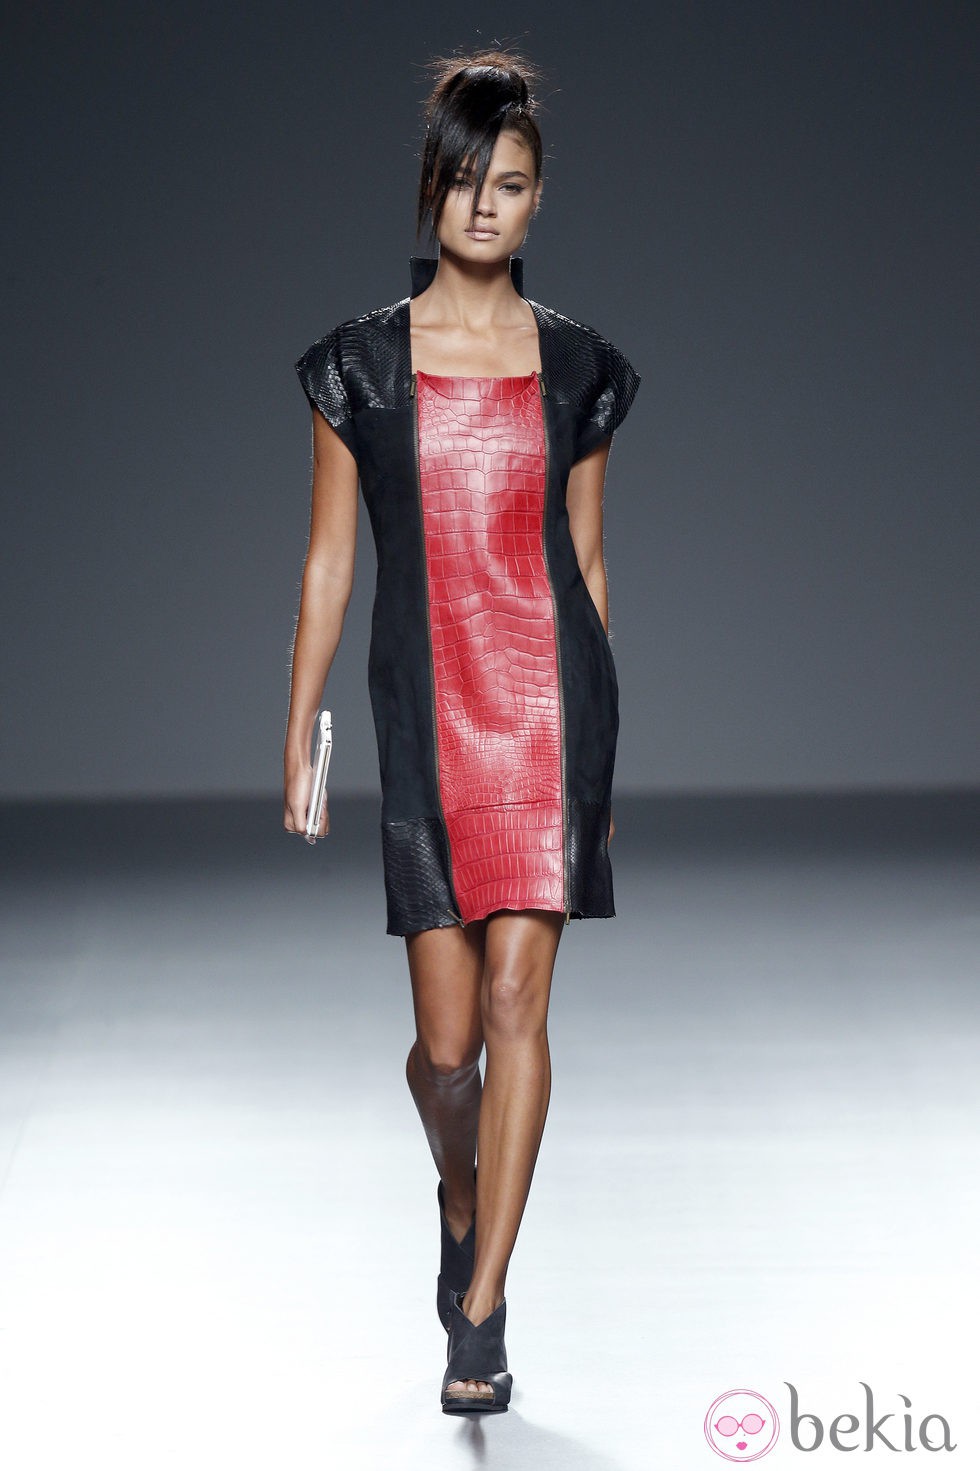 Vestido rojo y negro de piel de primavera/verano 2015 de Etxeberría en Madrid Fashion Week